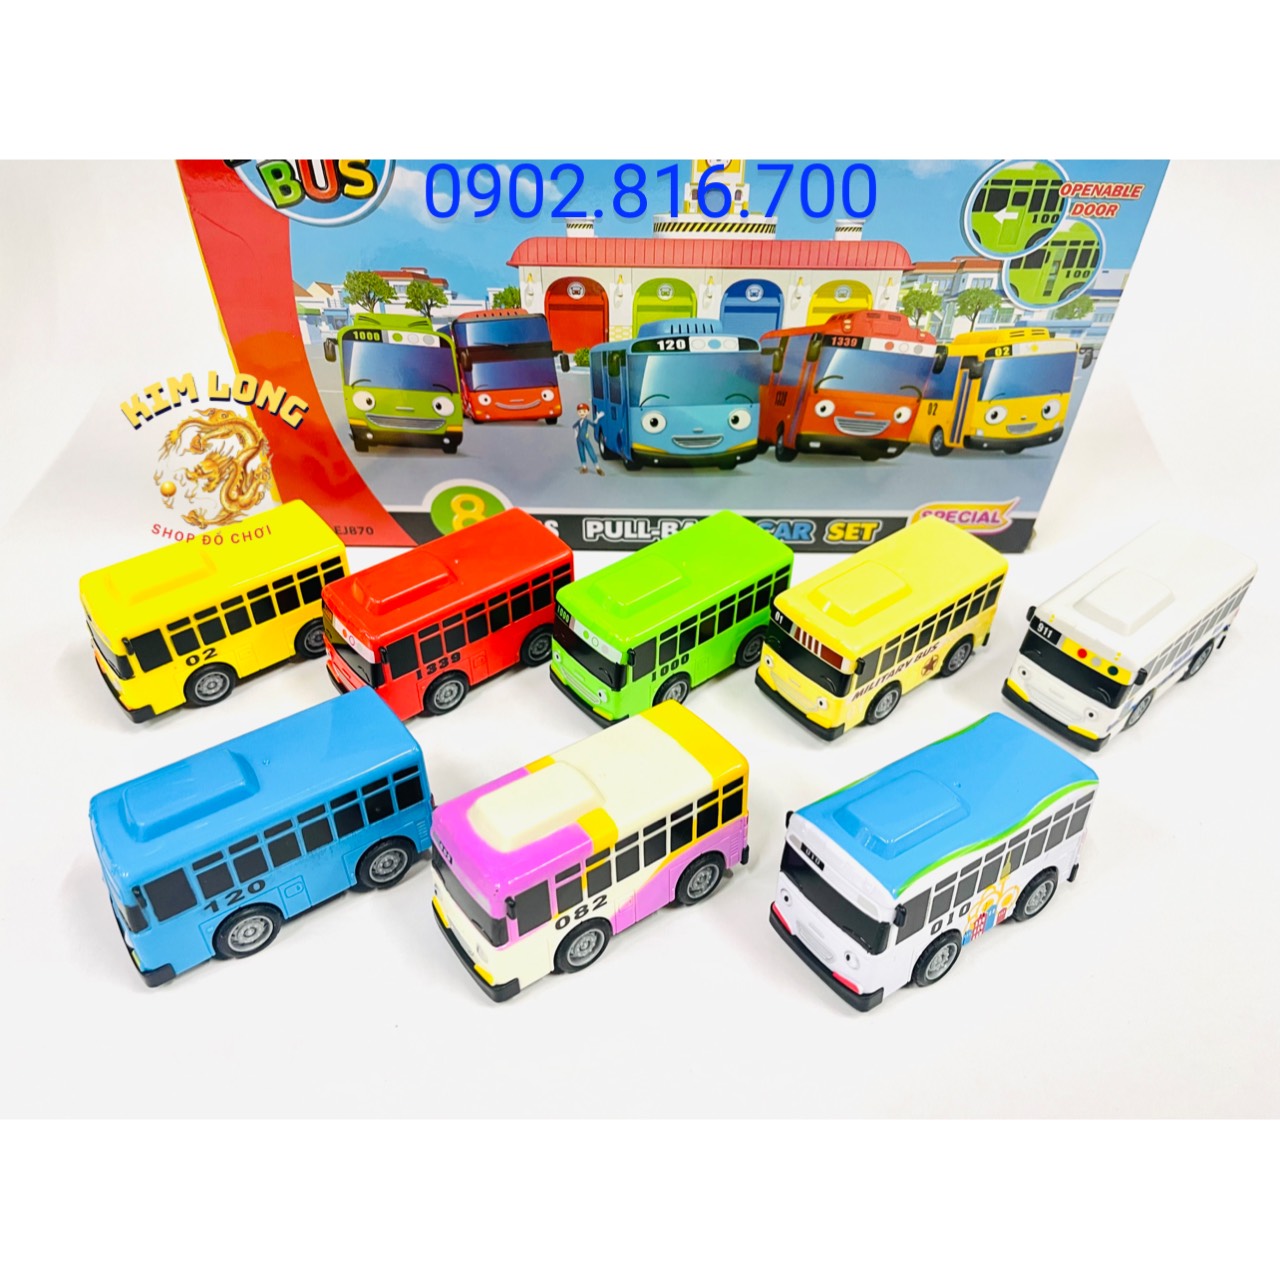 Bộ đồ chơi xe buýt TAYO bé nhỏ - xe buýt Tayo , Lani, Gani trong phim TAYO